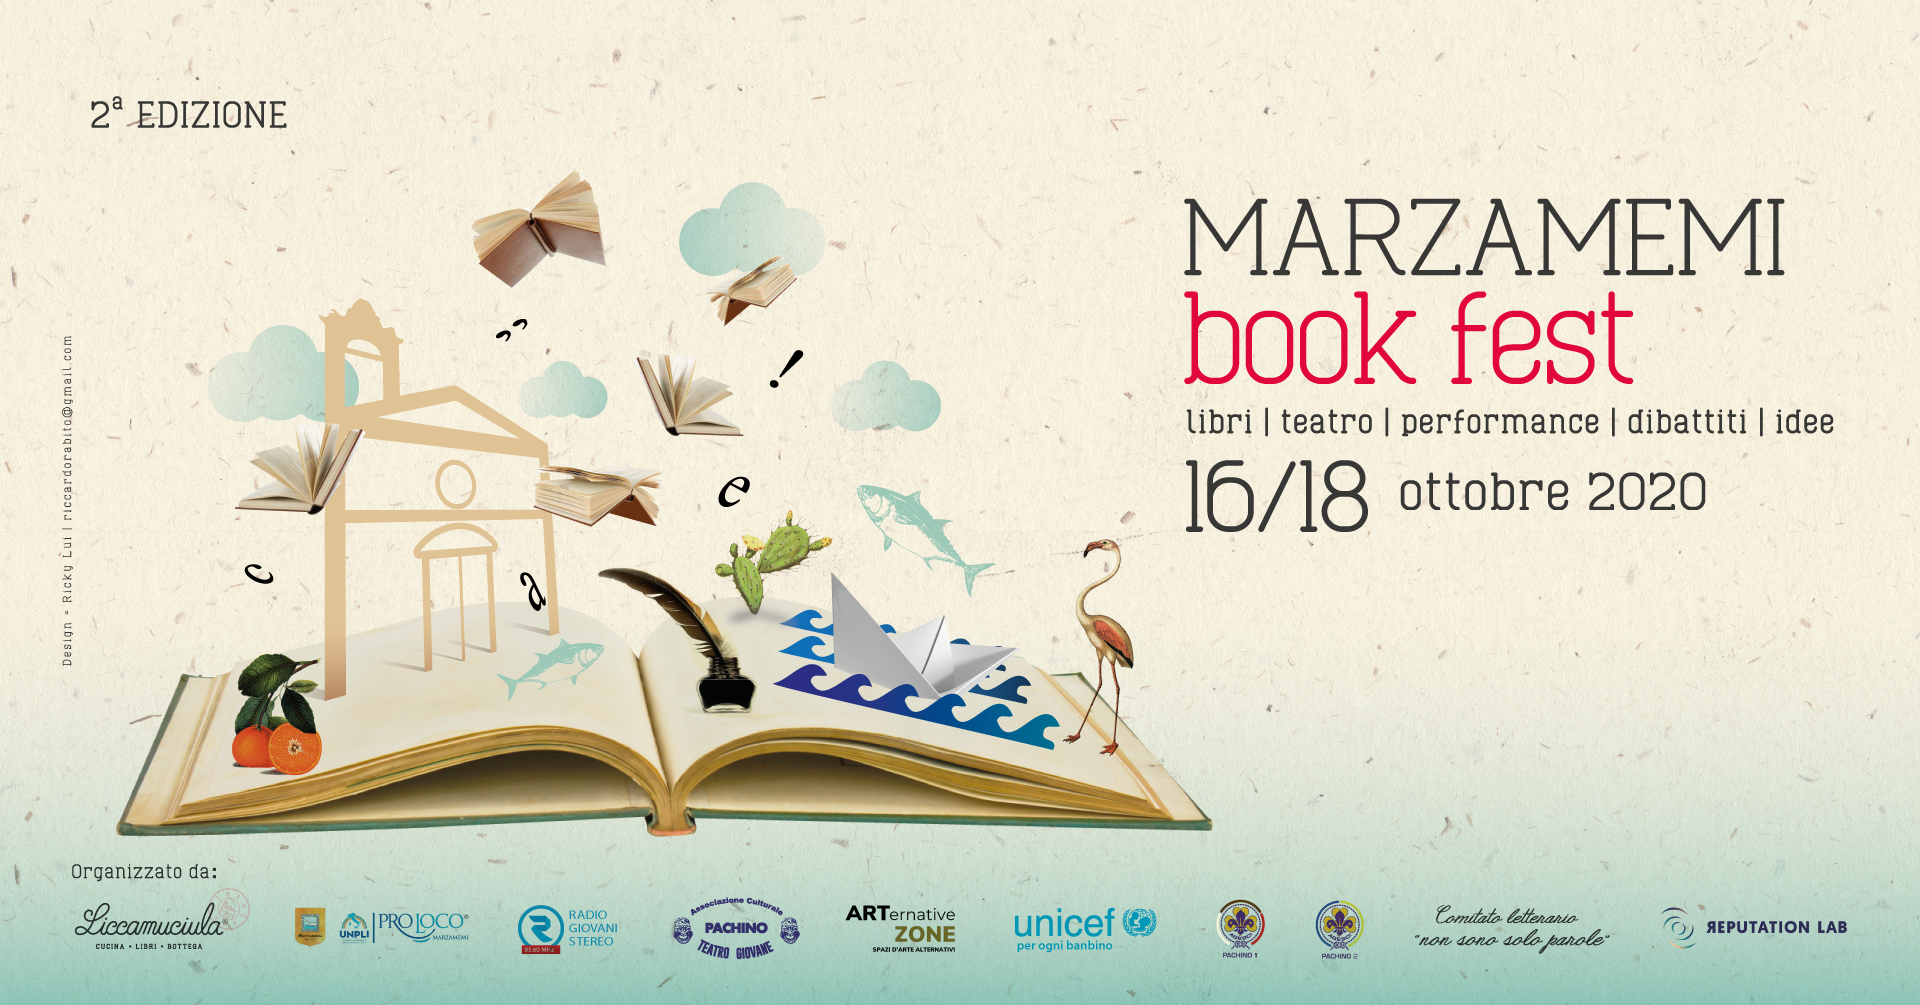 Torna il Marzamemi Book Fest dal 16 al 18 ottobre